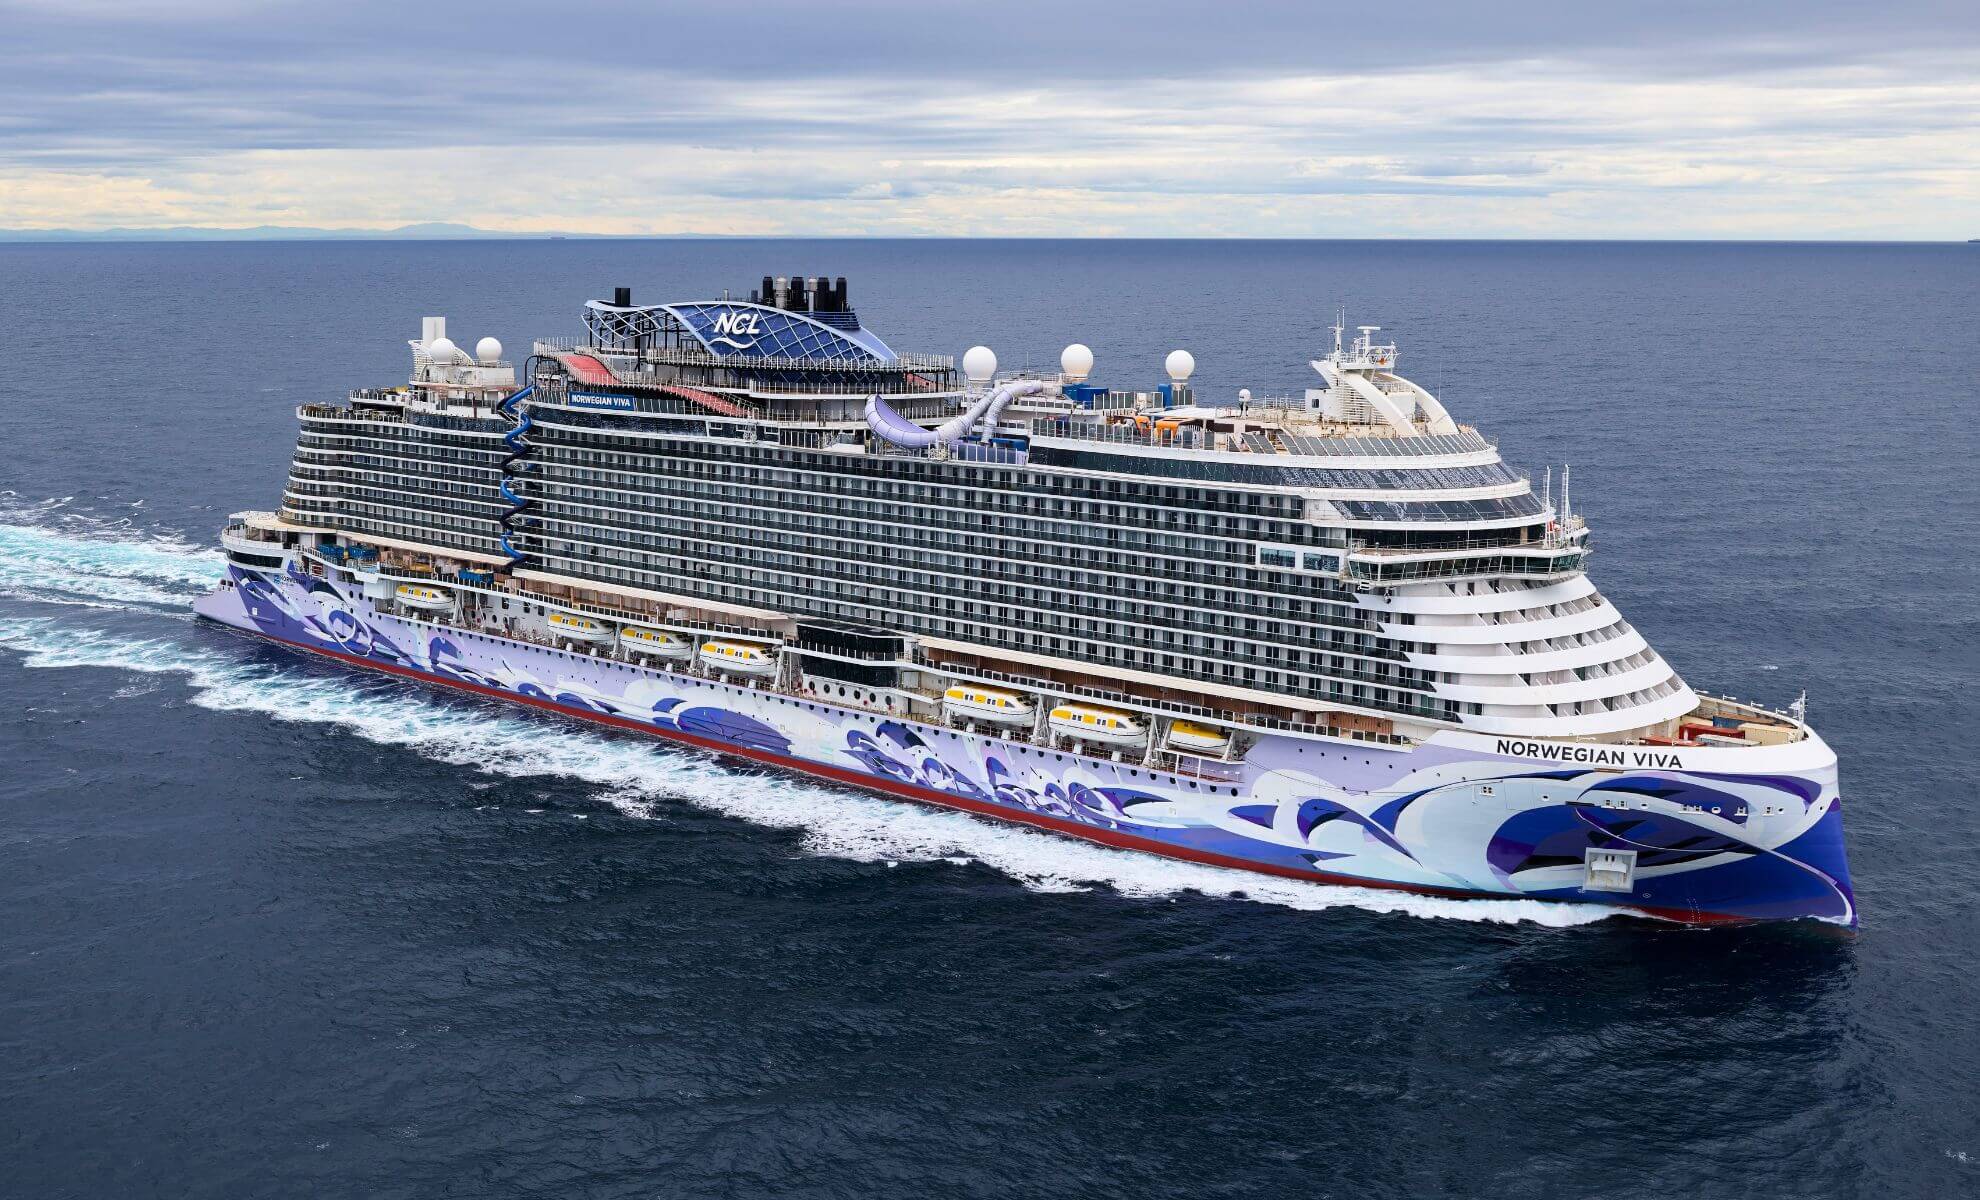 Norwegian Viva - Norwegian Cruise Line